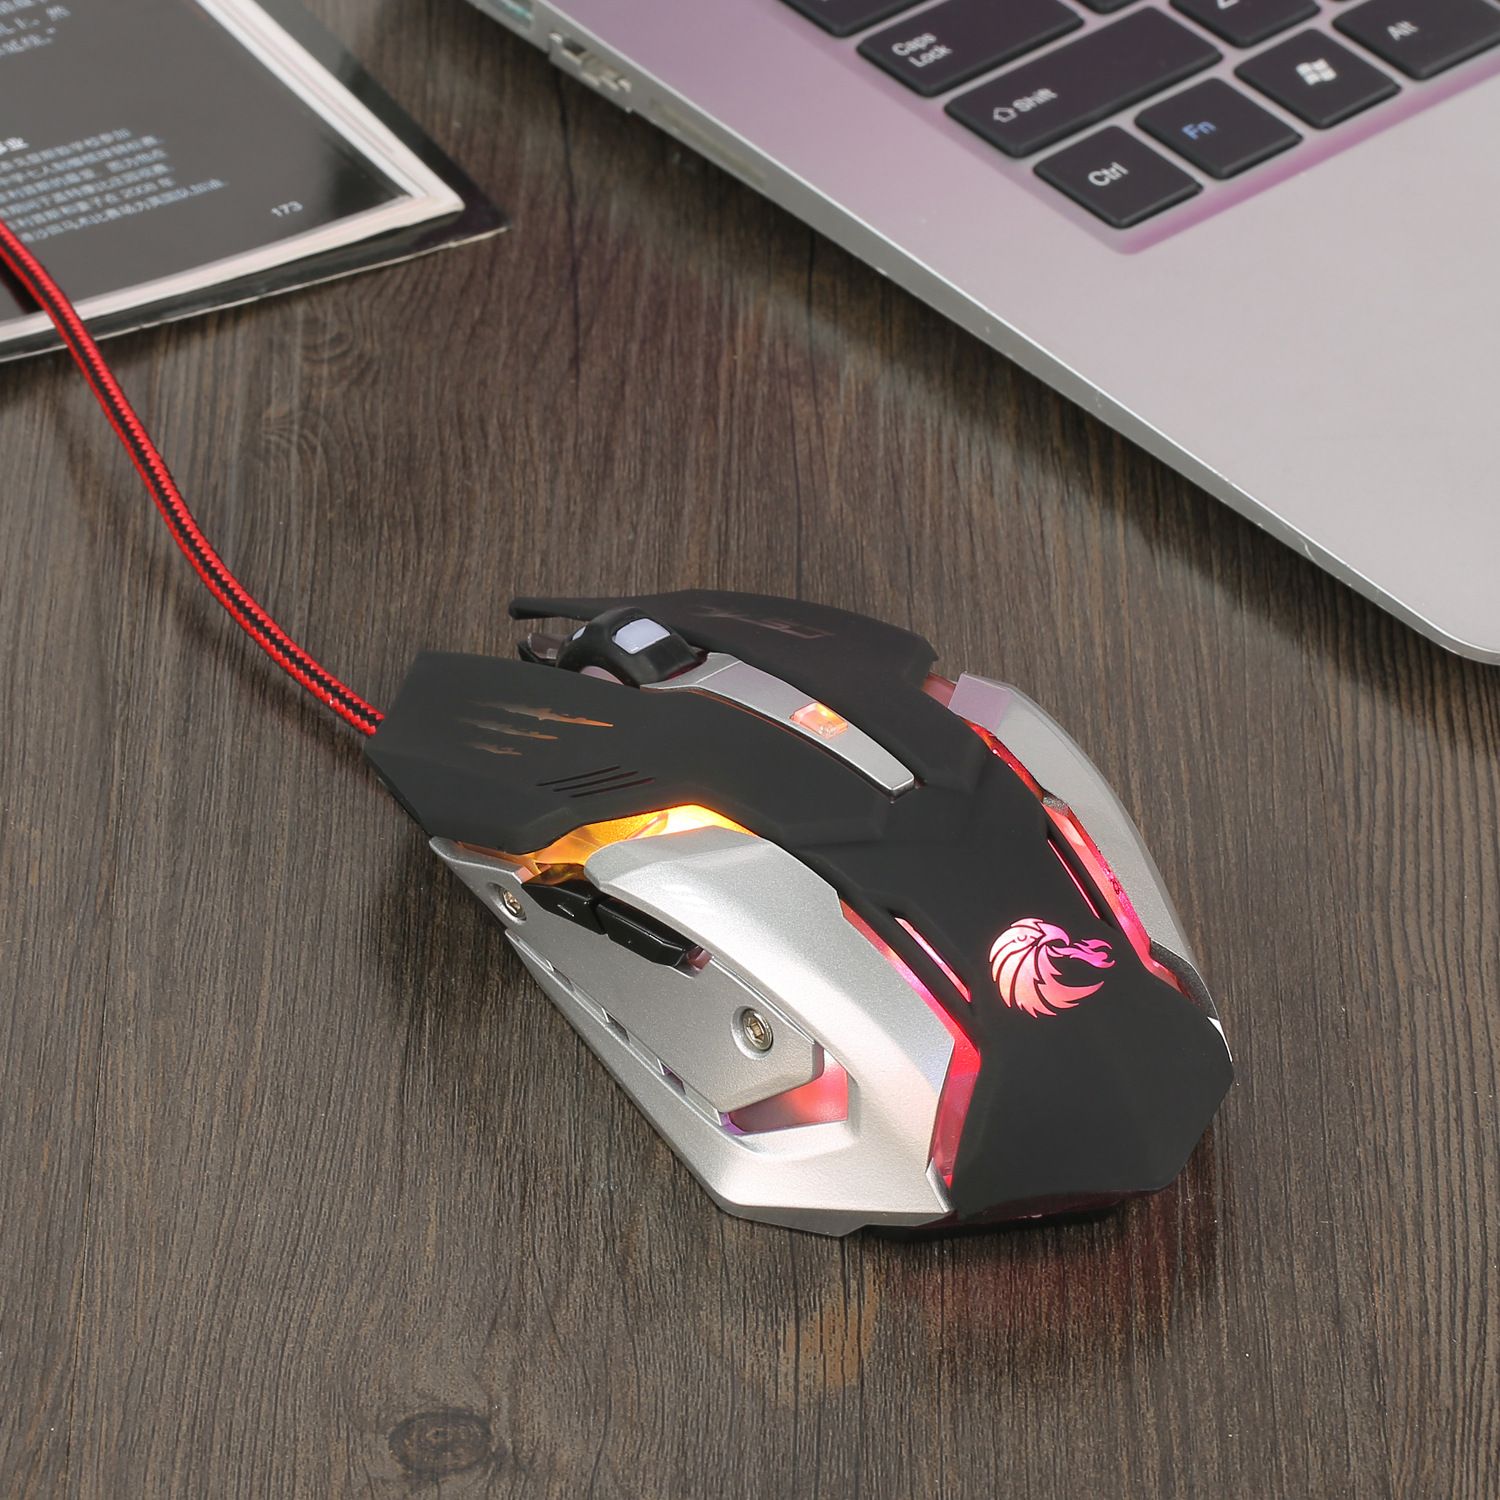 Компьютерные мыши для ноутбуков. S7 мышь игровая. Мышка Optical Mouse игровая c5. Мышь проводная ZG-702. Компьютерный мышь Hyundai-305.